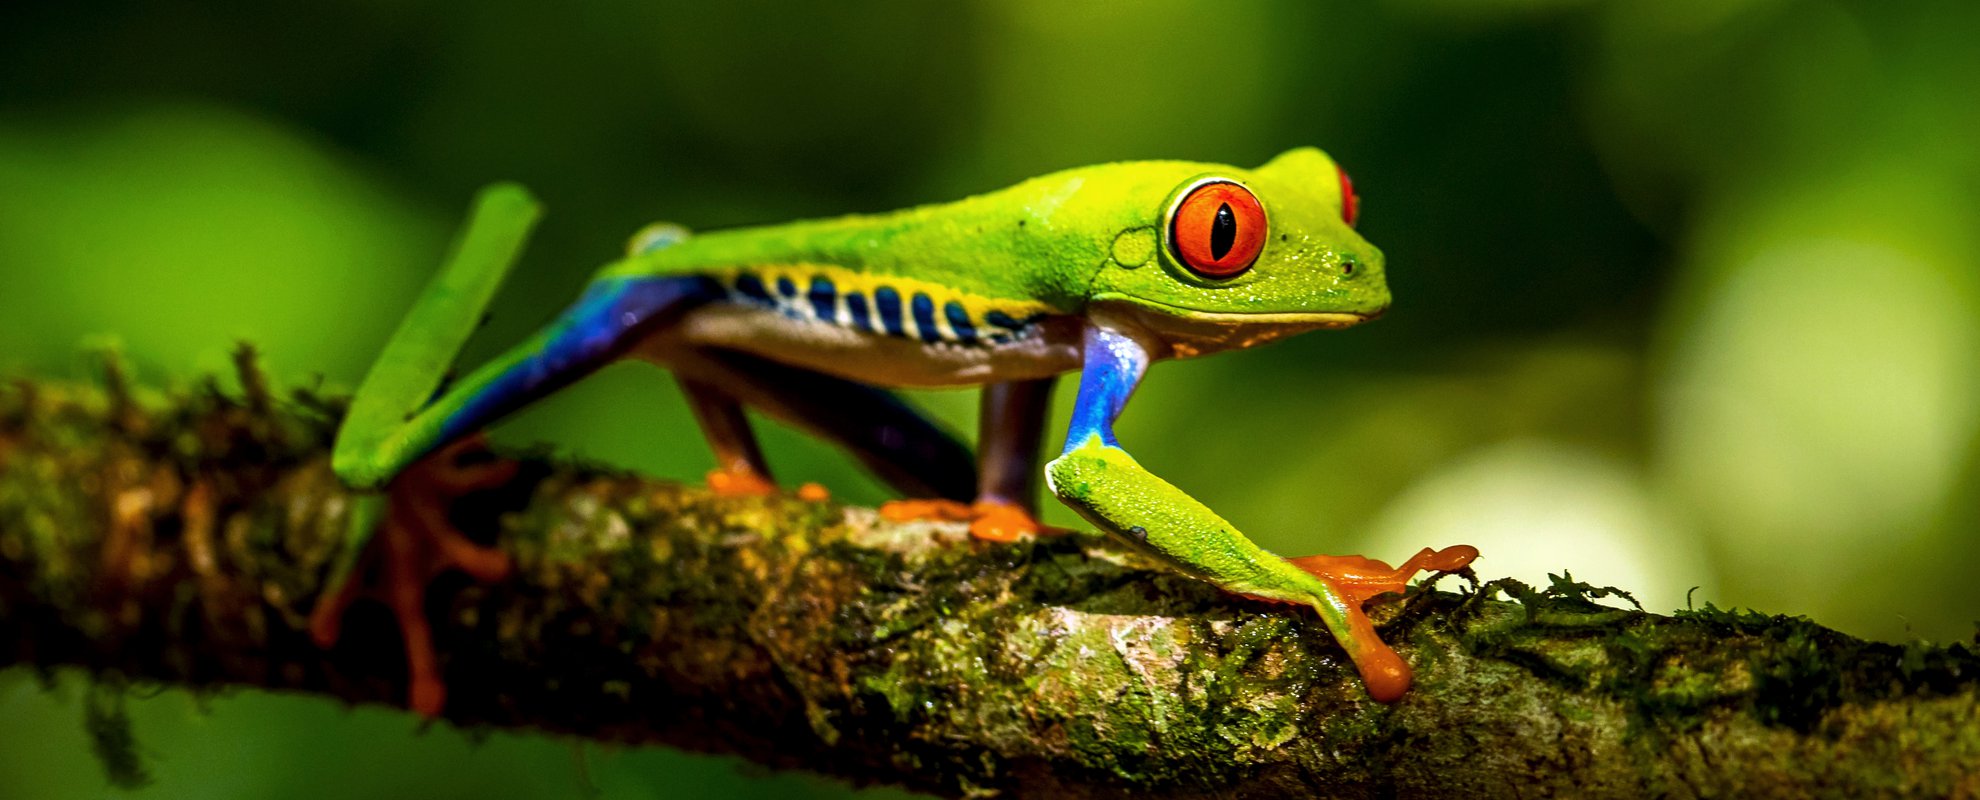 Den Rödögda bladgrodan har blivit en symbol för Costa Ricas djurliv